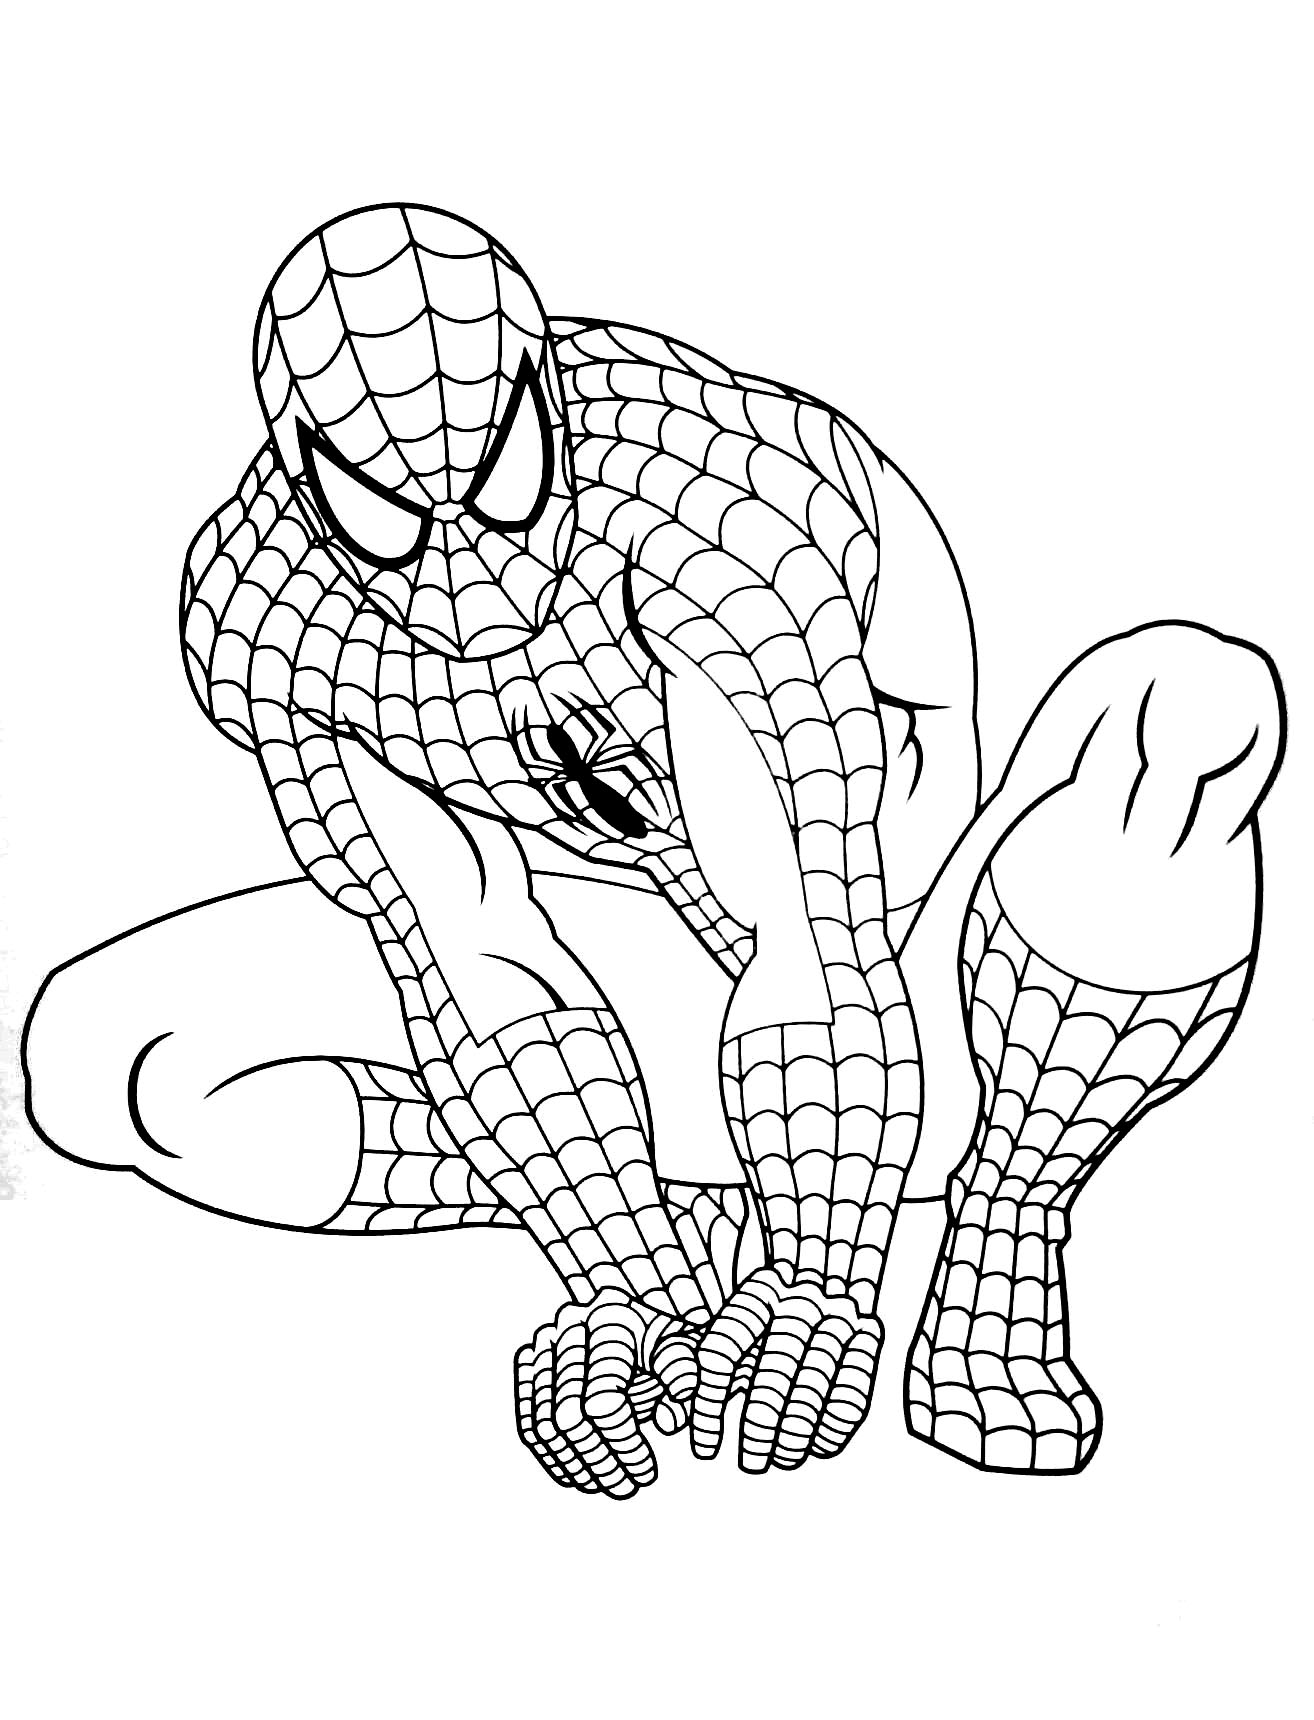 Coloriage de Spiderman à imprimer pour enfants - Coloriage Spiderman - Coloriages pour enfants